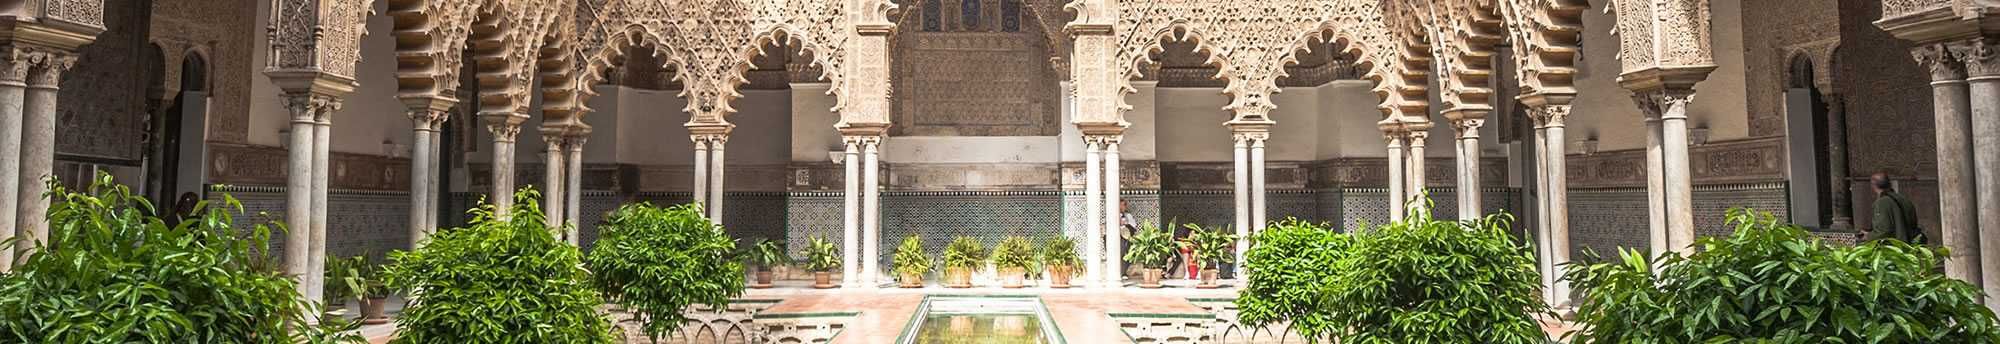 Visita a la Catedral de Sevilla, Alcazar y la Giralda